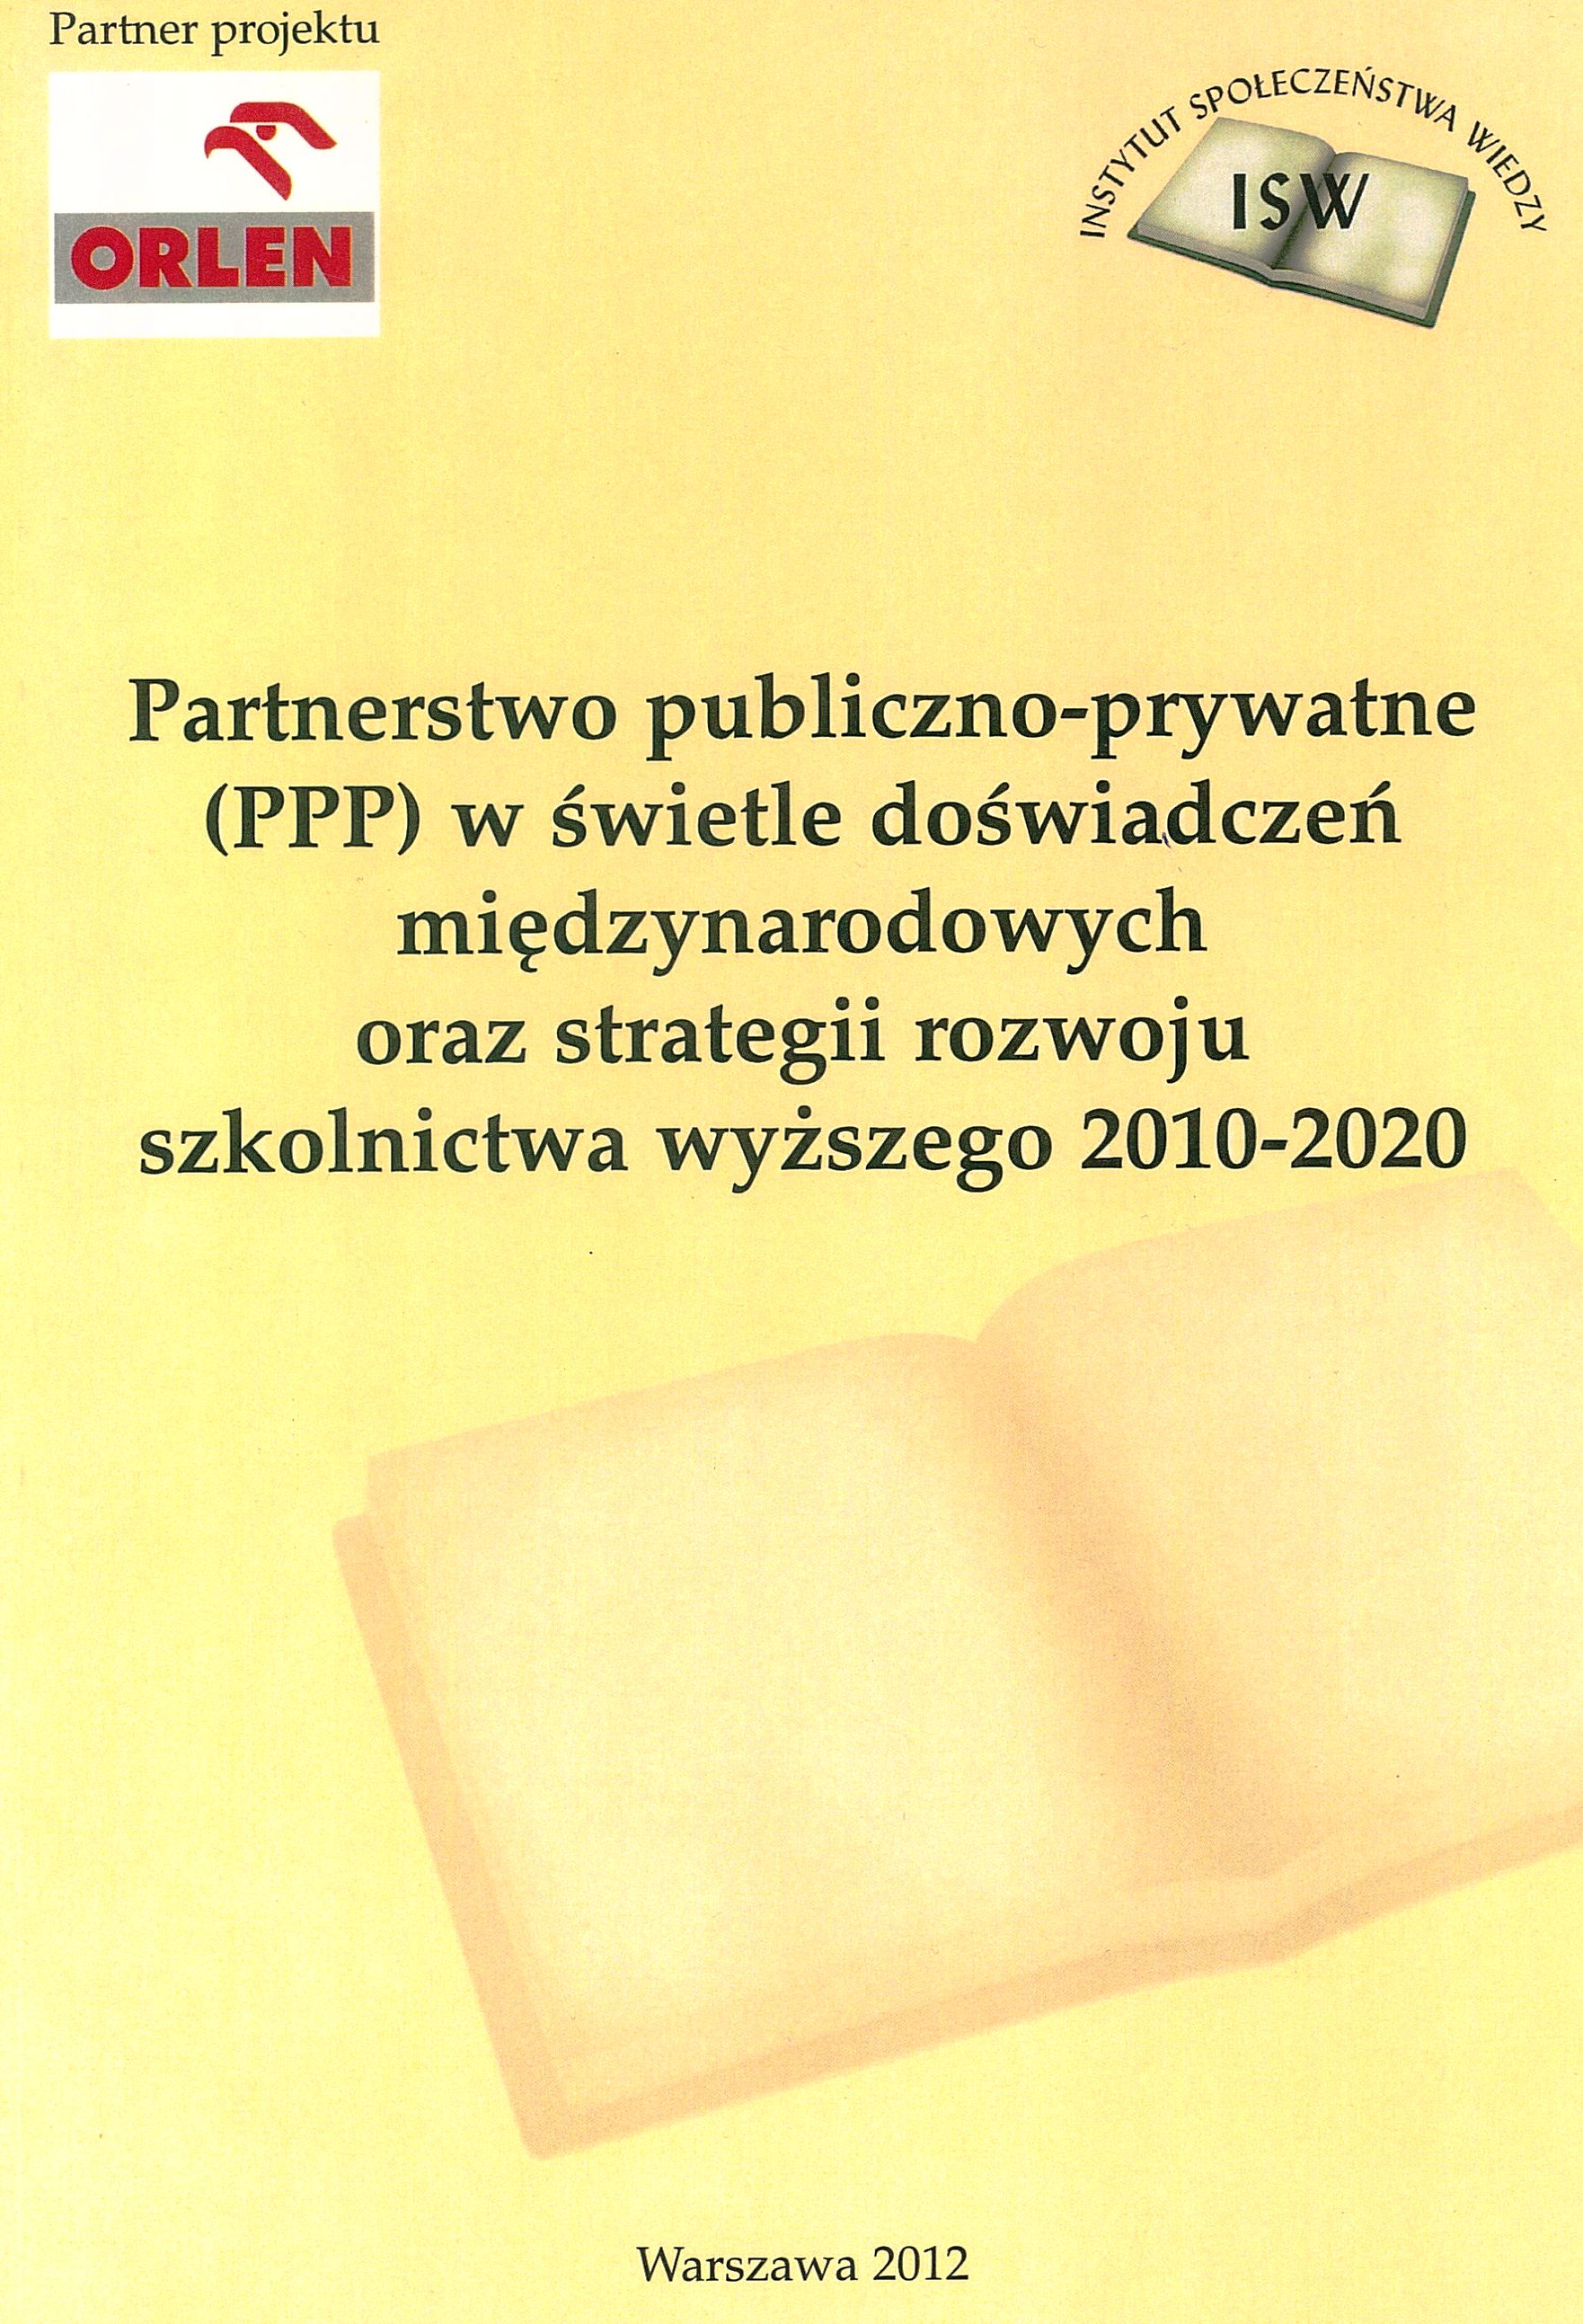 Partnerstwo publiczno-prywatne (PPP) w świetle doświadczeń międzynarodowych oraz strategii rozwoju szkolnictwa wyższego 2010-2020